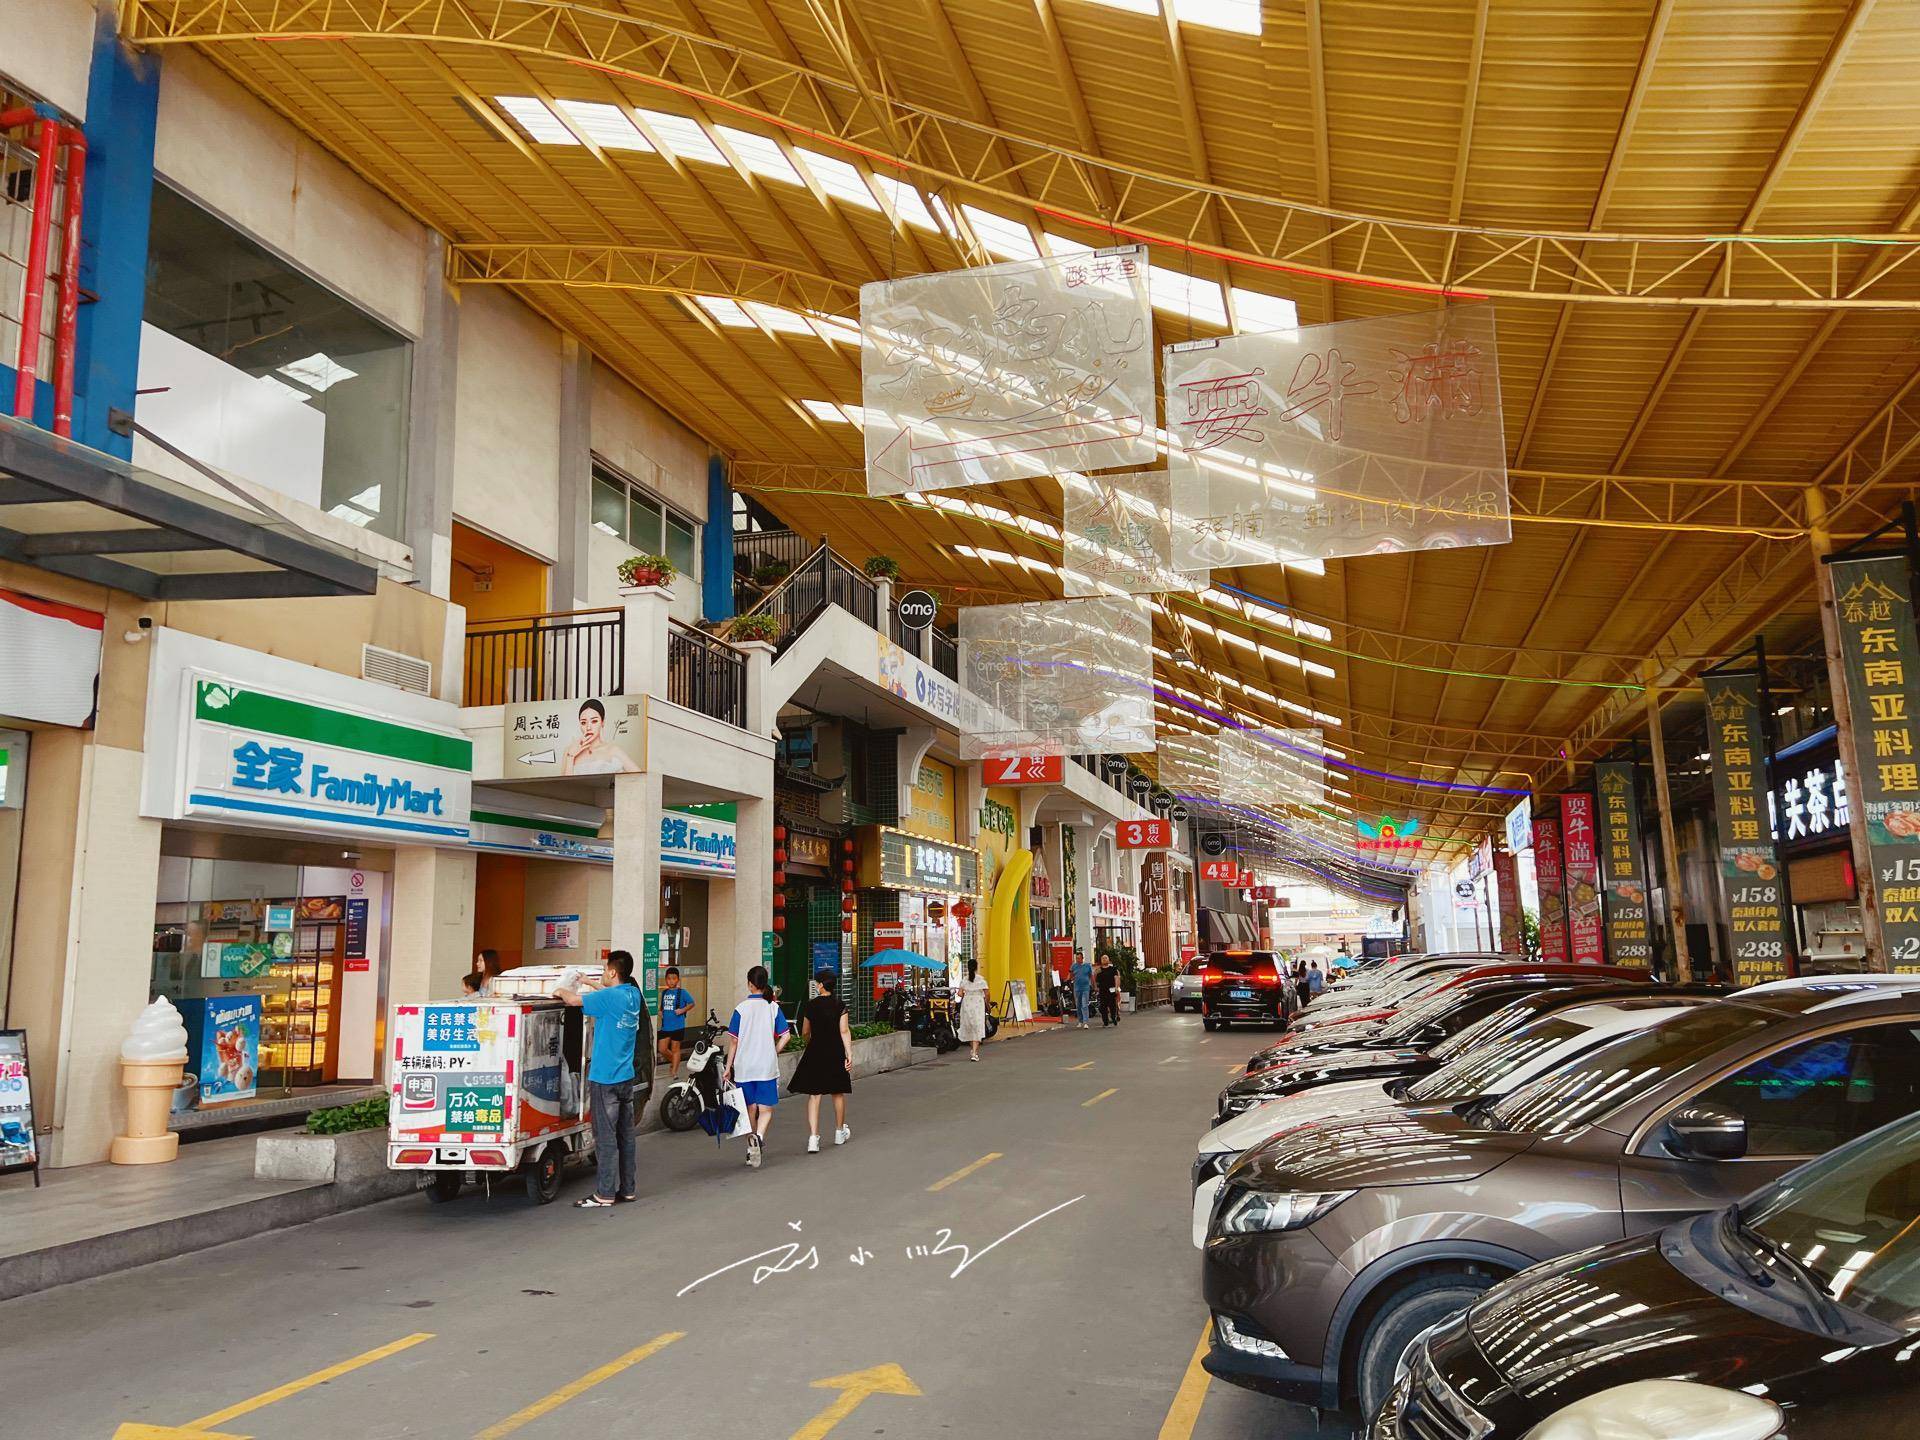 实拍广州番禺的omg网红街,由批发市场改造而成,你来过吗?